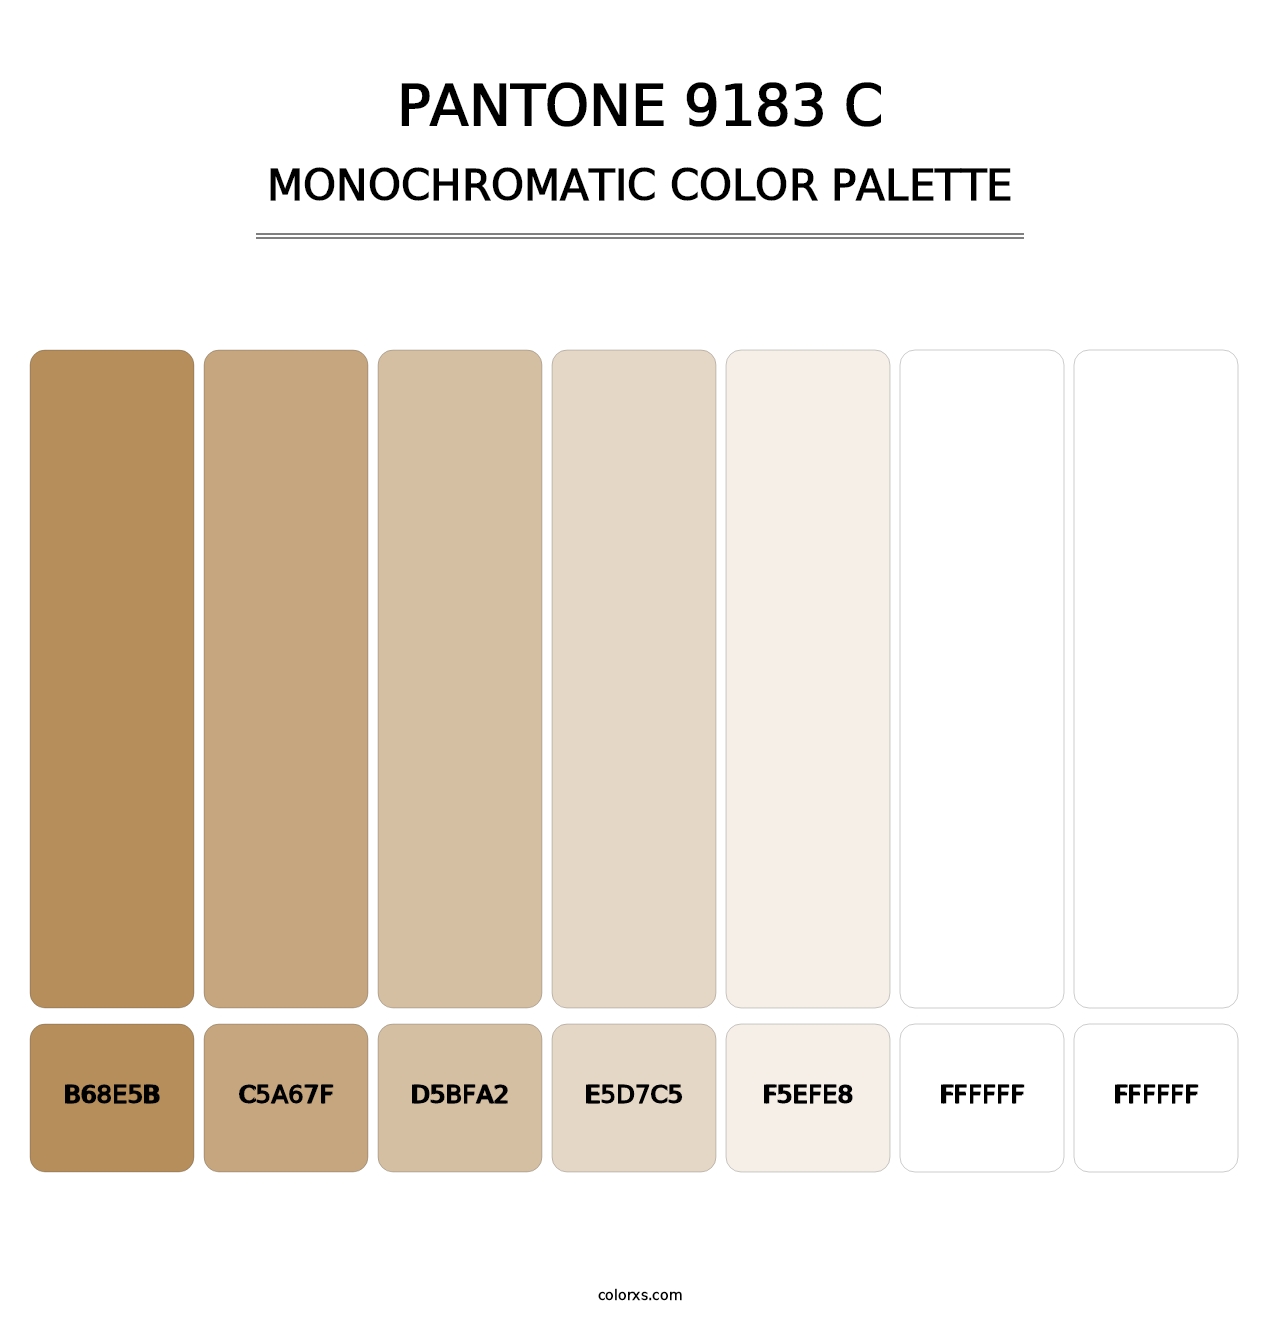 PANTONE 9183 C - Monochromatic Color Palette